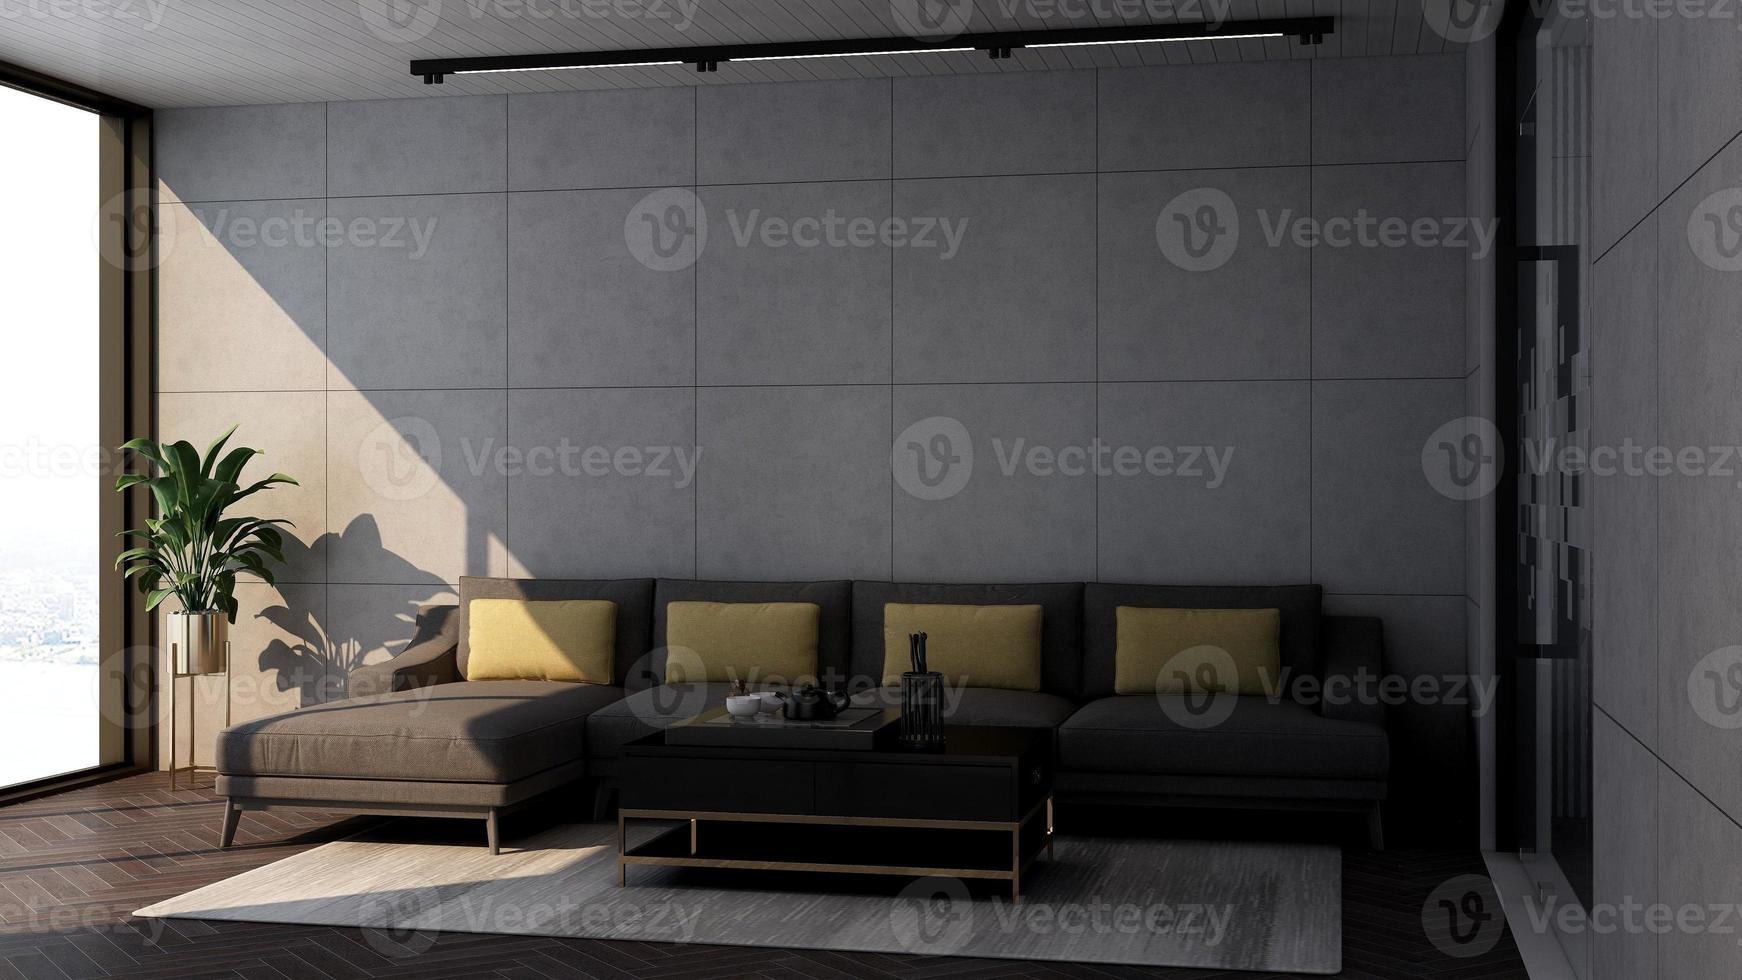 Diseño de maqueta de pared de salón de invitados de renderizado 3d con concepto de diseño de interiores minimalista moderno foto